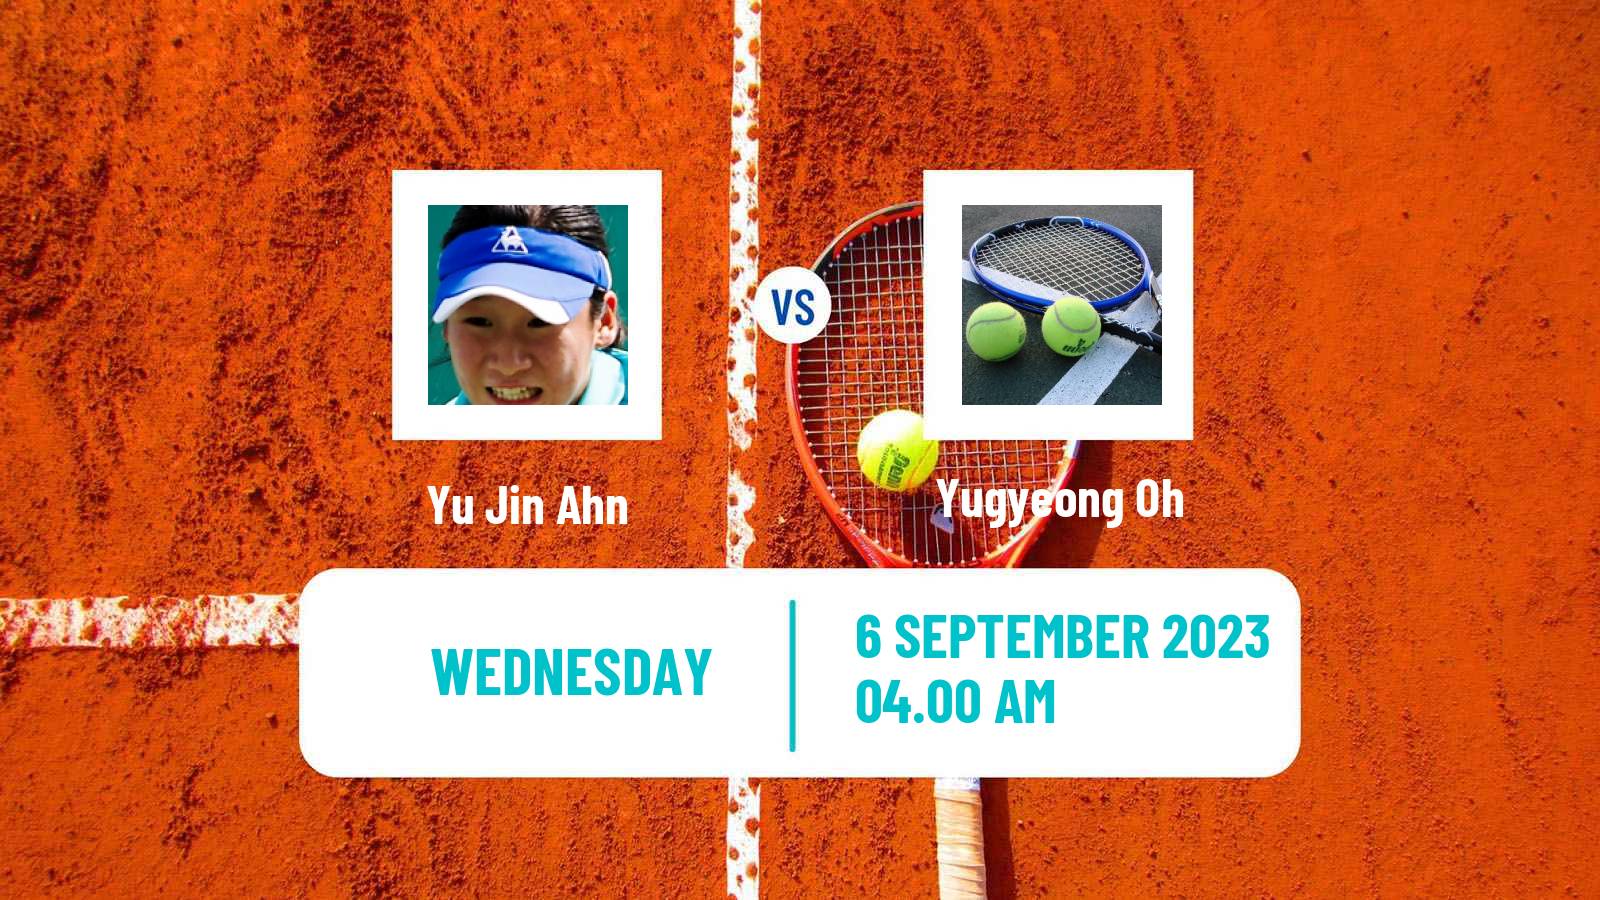 Tennis ITF W15 Yeongwol 2 Women Yu Jin Ahn - Yugyeong Oh